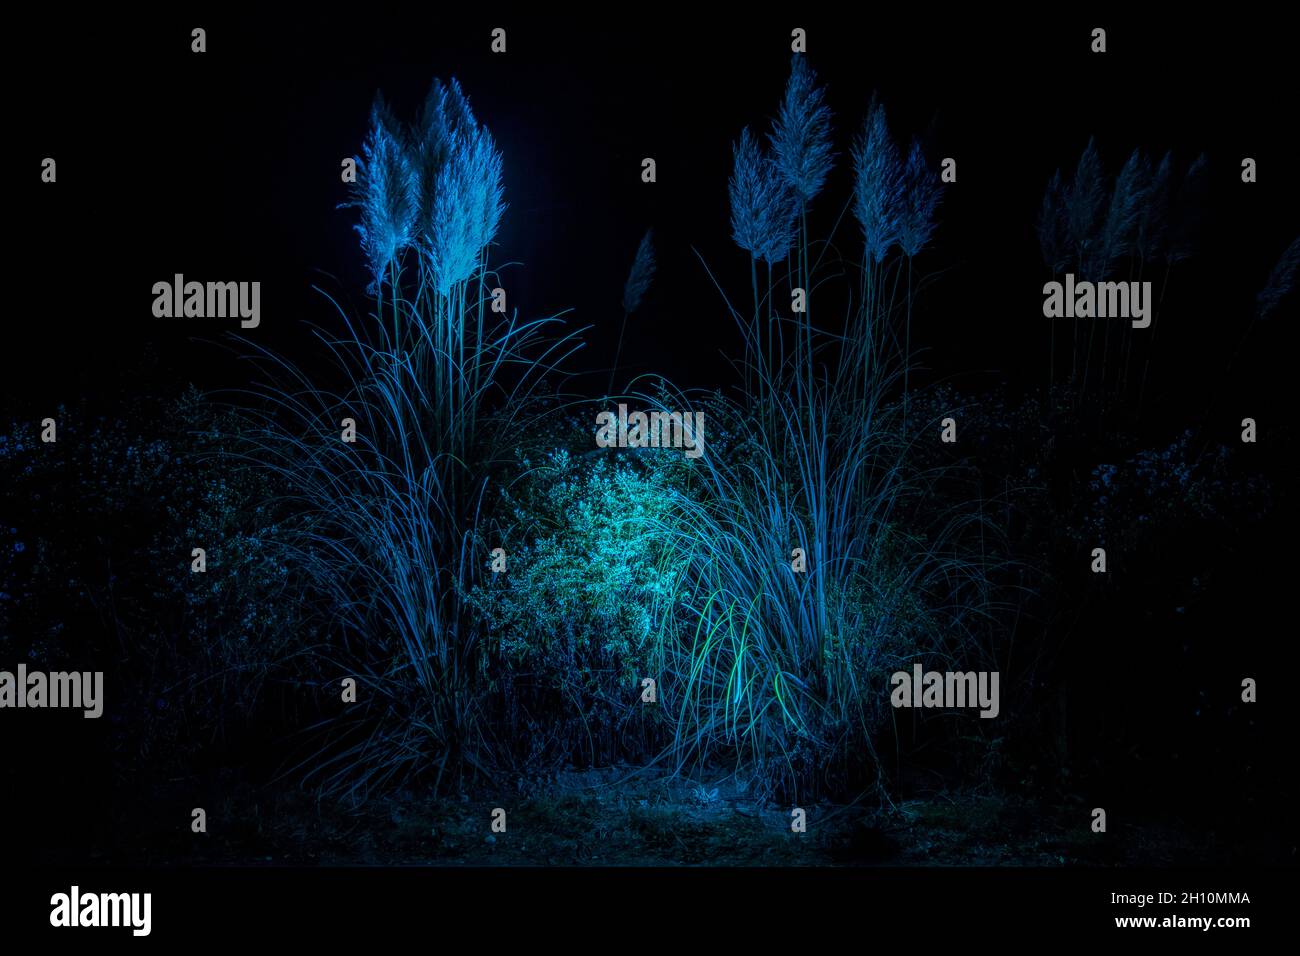 Gras Wedel im Dunkeln in blauem Licht Stockfoto